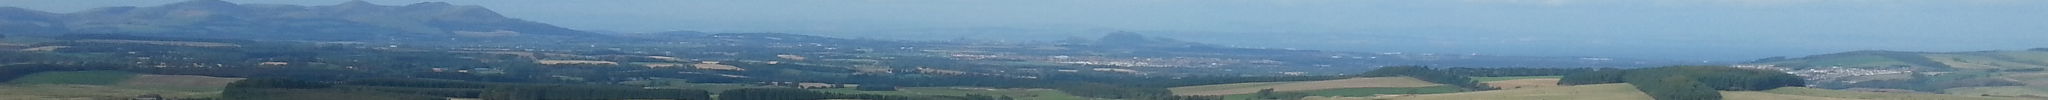 Midlothian View Landscape